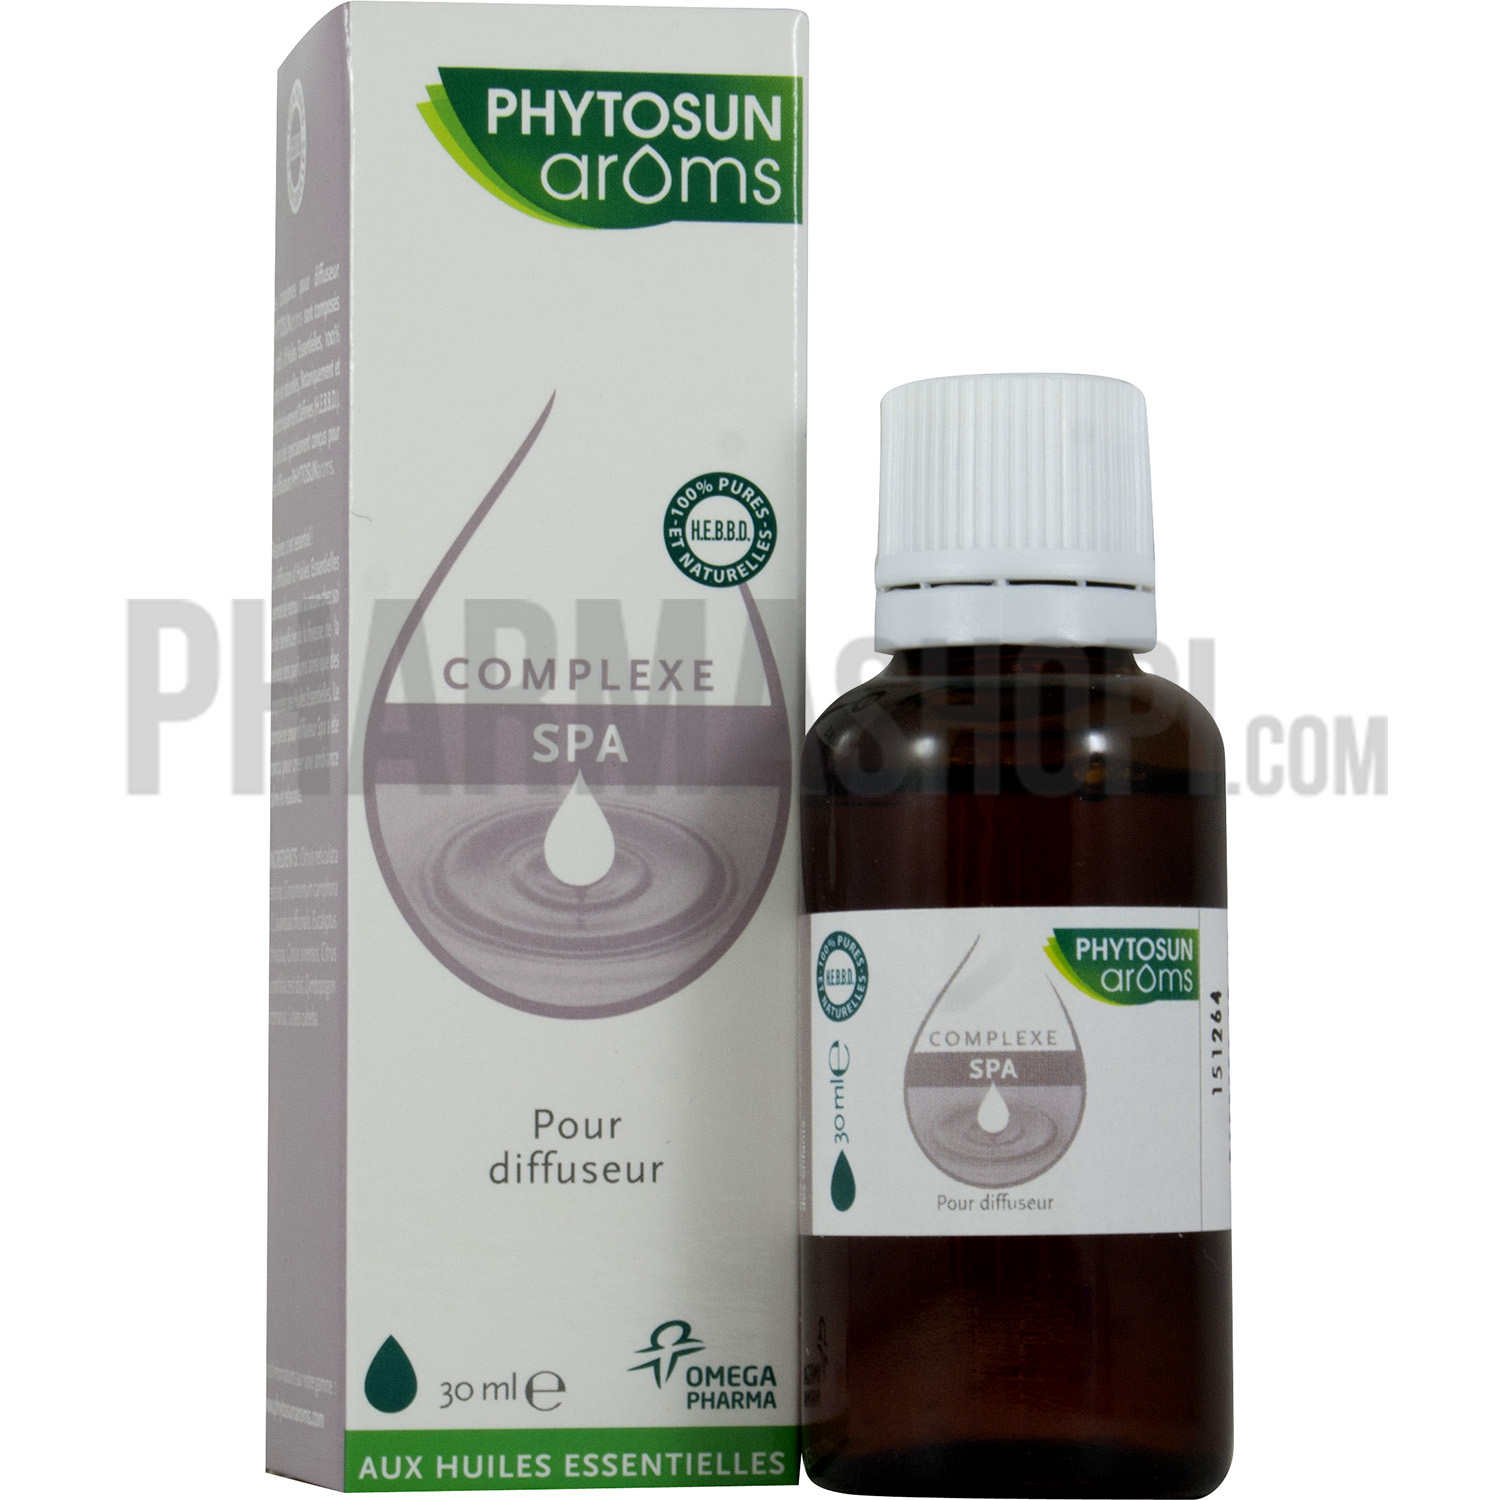 Complexe SPA pour diffuseur Phytosun arôms - flacon de 30 ml